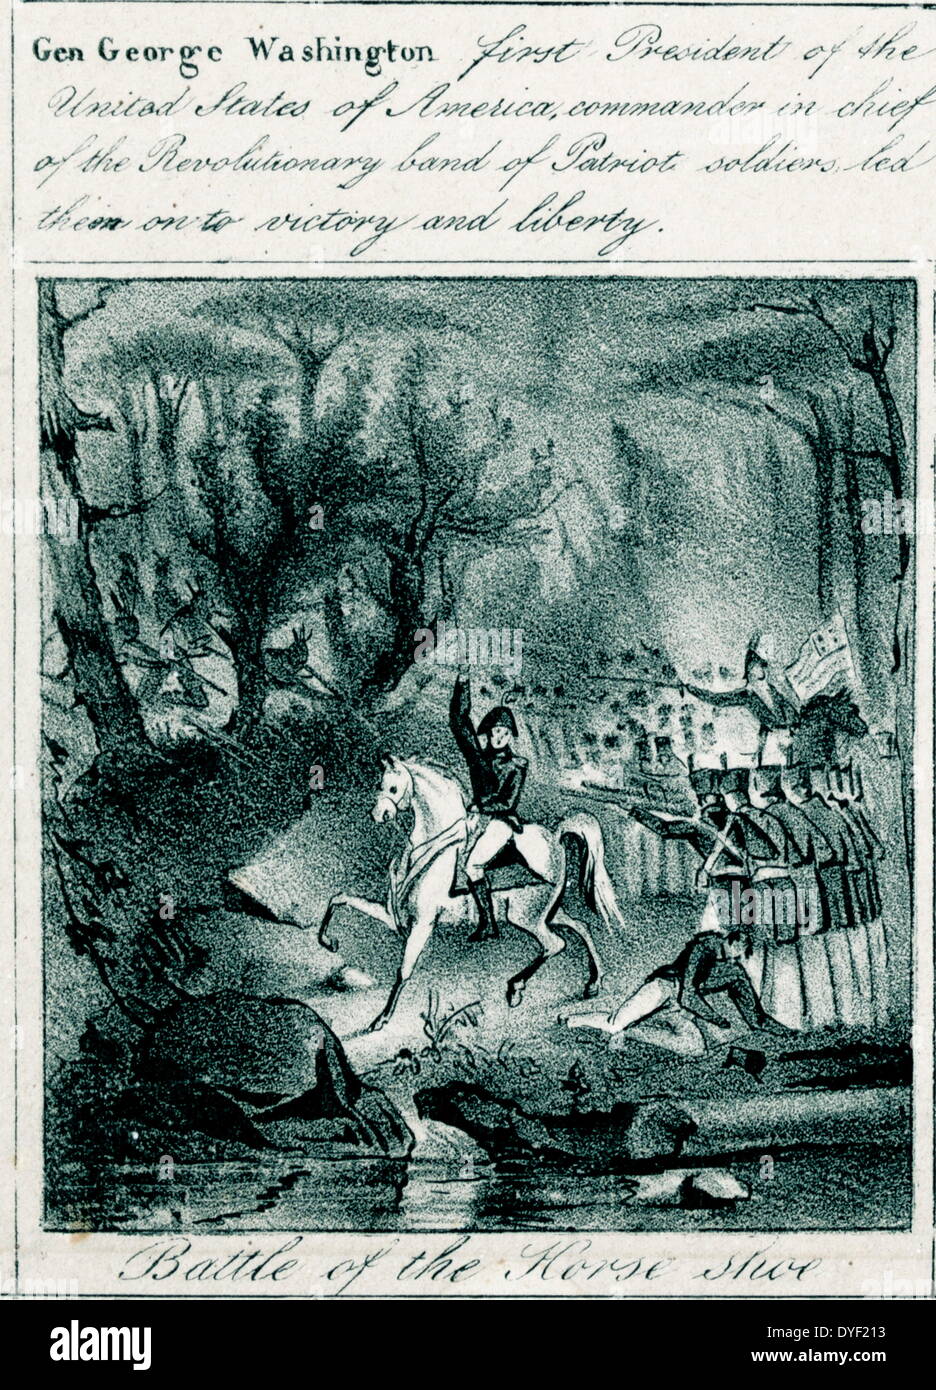 Ilustración mostrando el General George Washington a caballo llevando la carga en la batalla de la Herradura. A su alrededor hay otros soldados heridos e ilesos. Circa 1800. Foto de stock